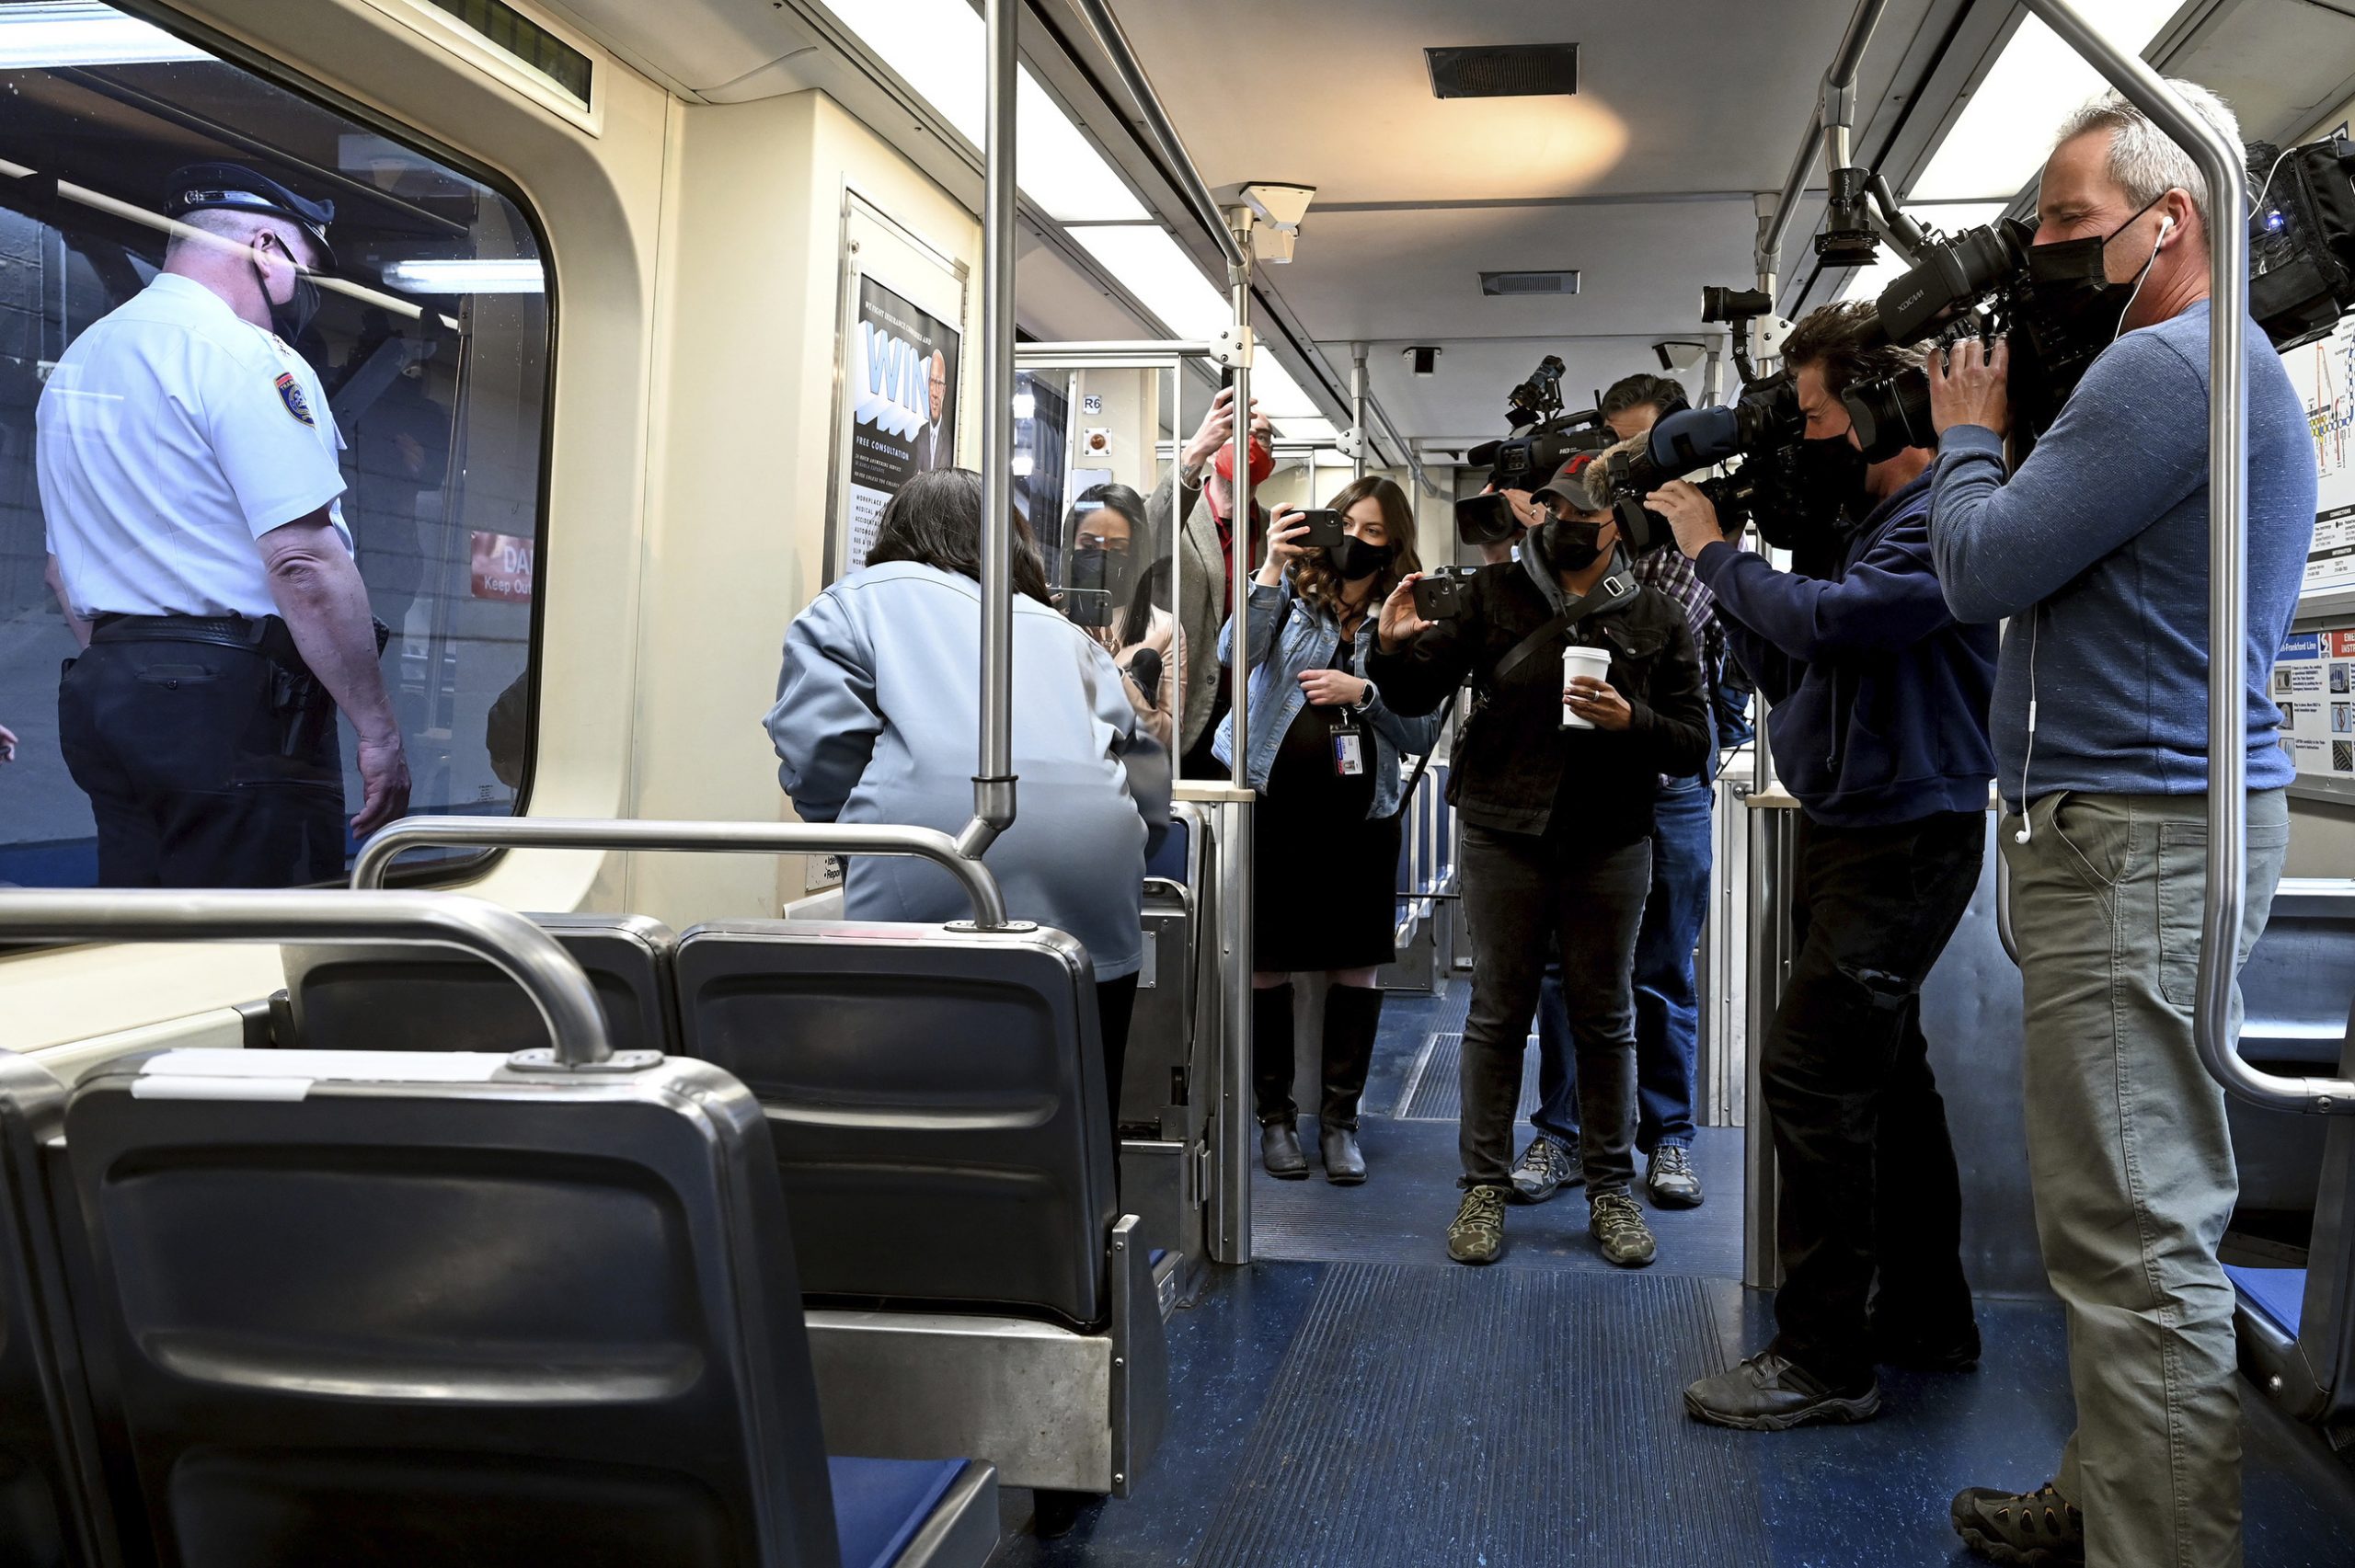  费城女子列车上遭强暴 乘客忙围观拍片 无人救援